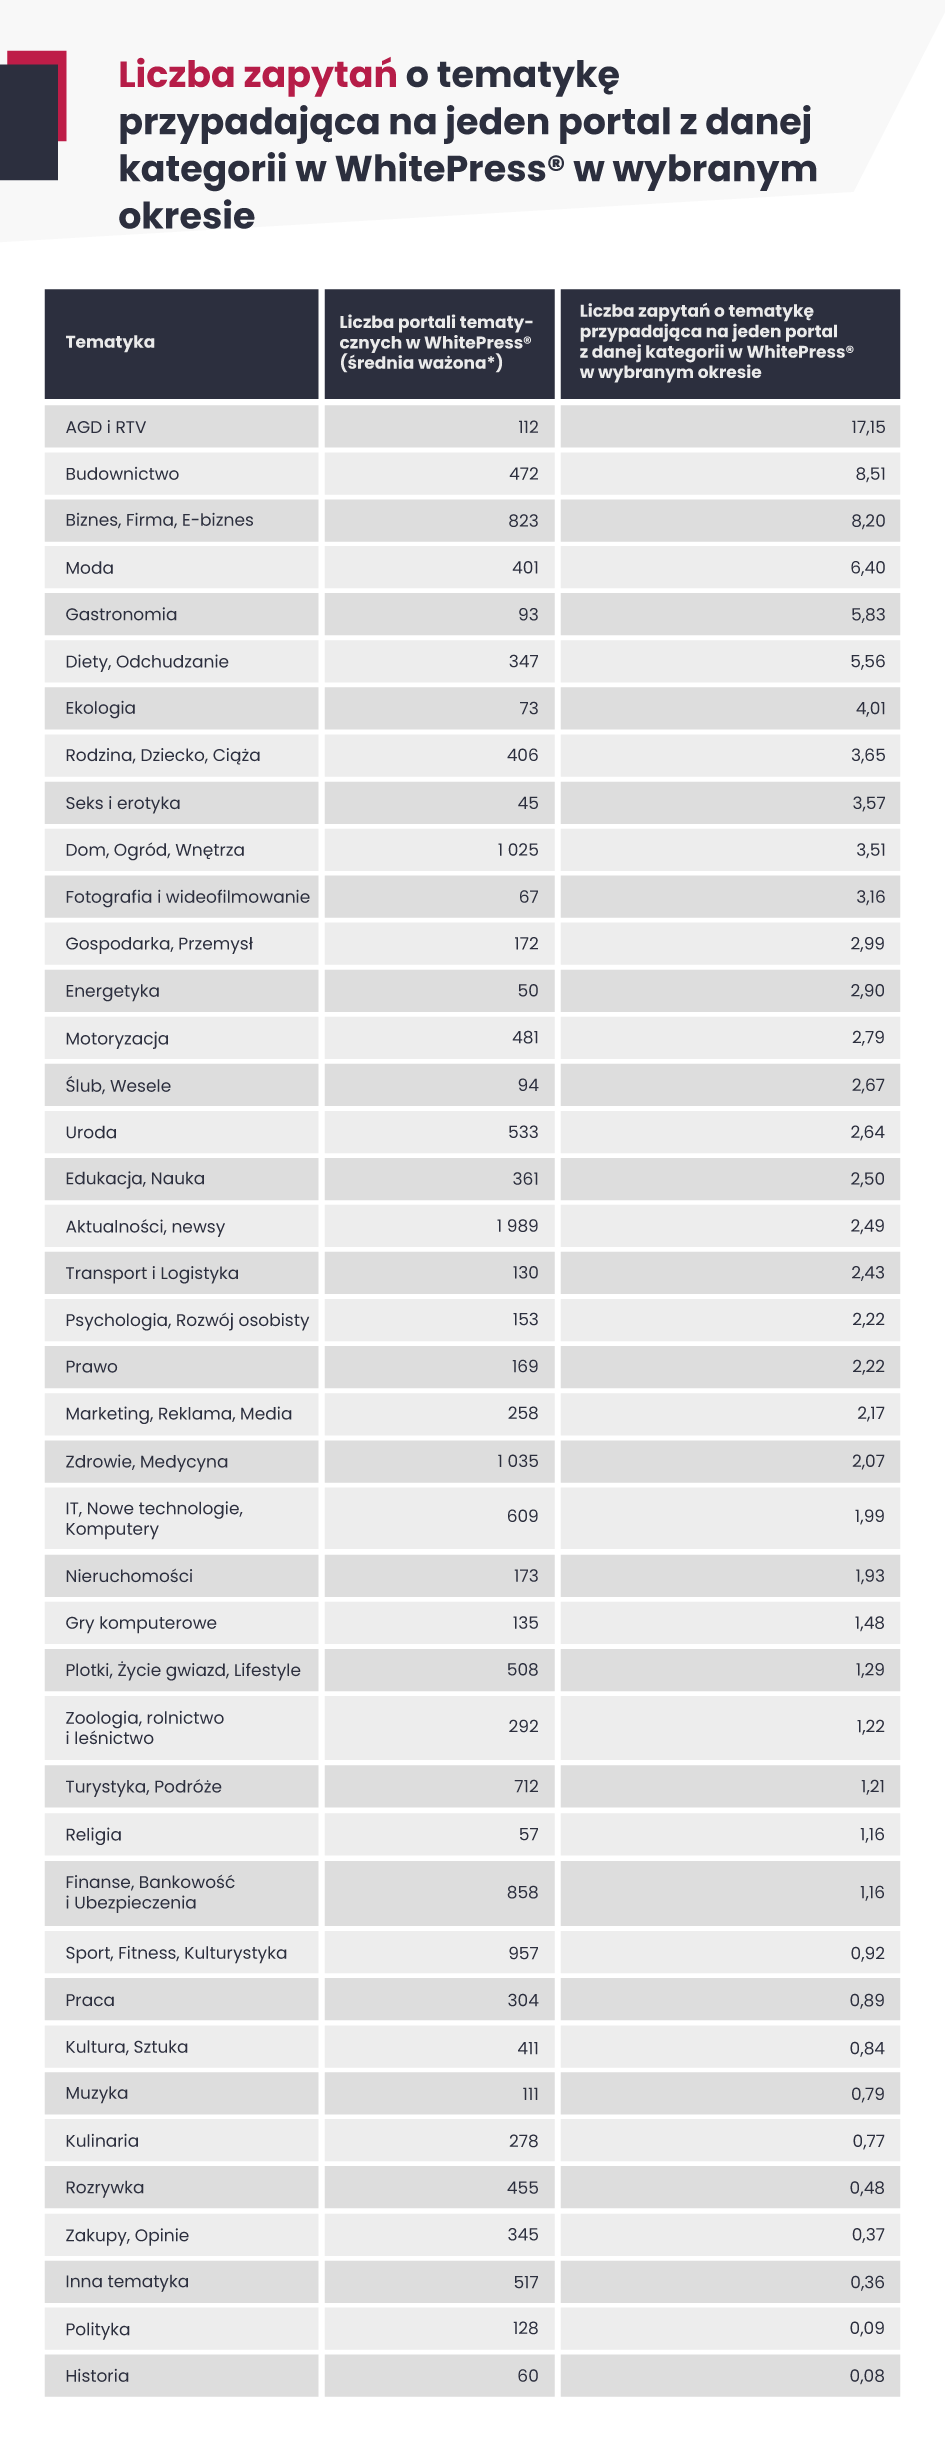 Tabela przedstawiająca liczbę rekordów z wyszukiwaniami poszczególnych kategorii tematycznych w zestawieniu z liczbą odpowiadających portali tematycznych